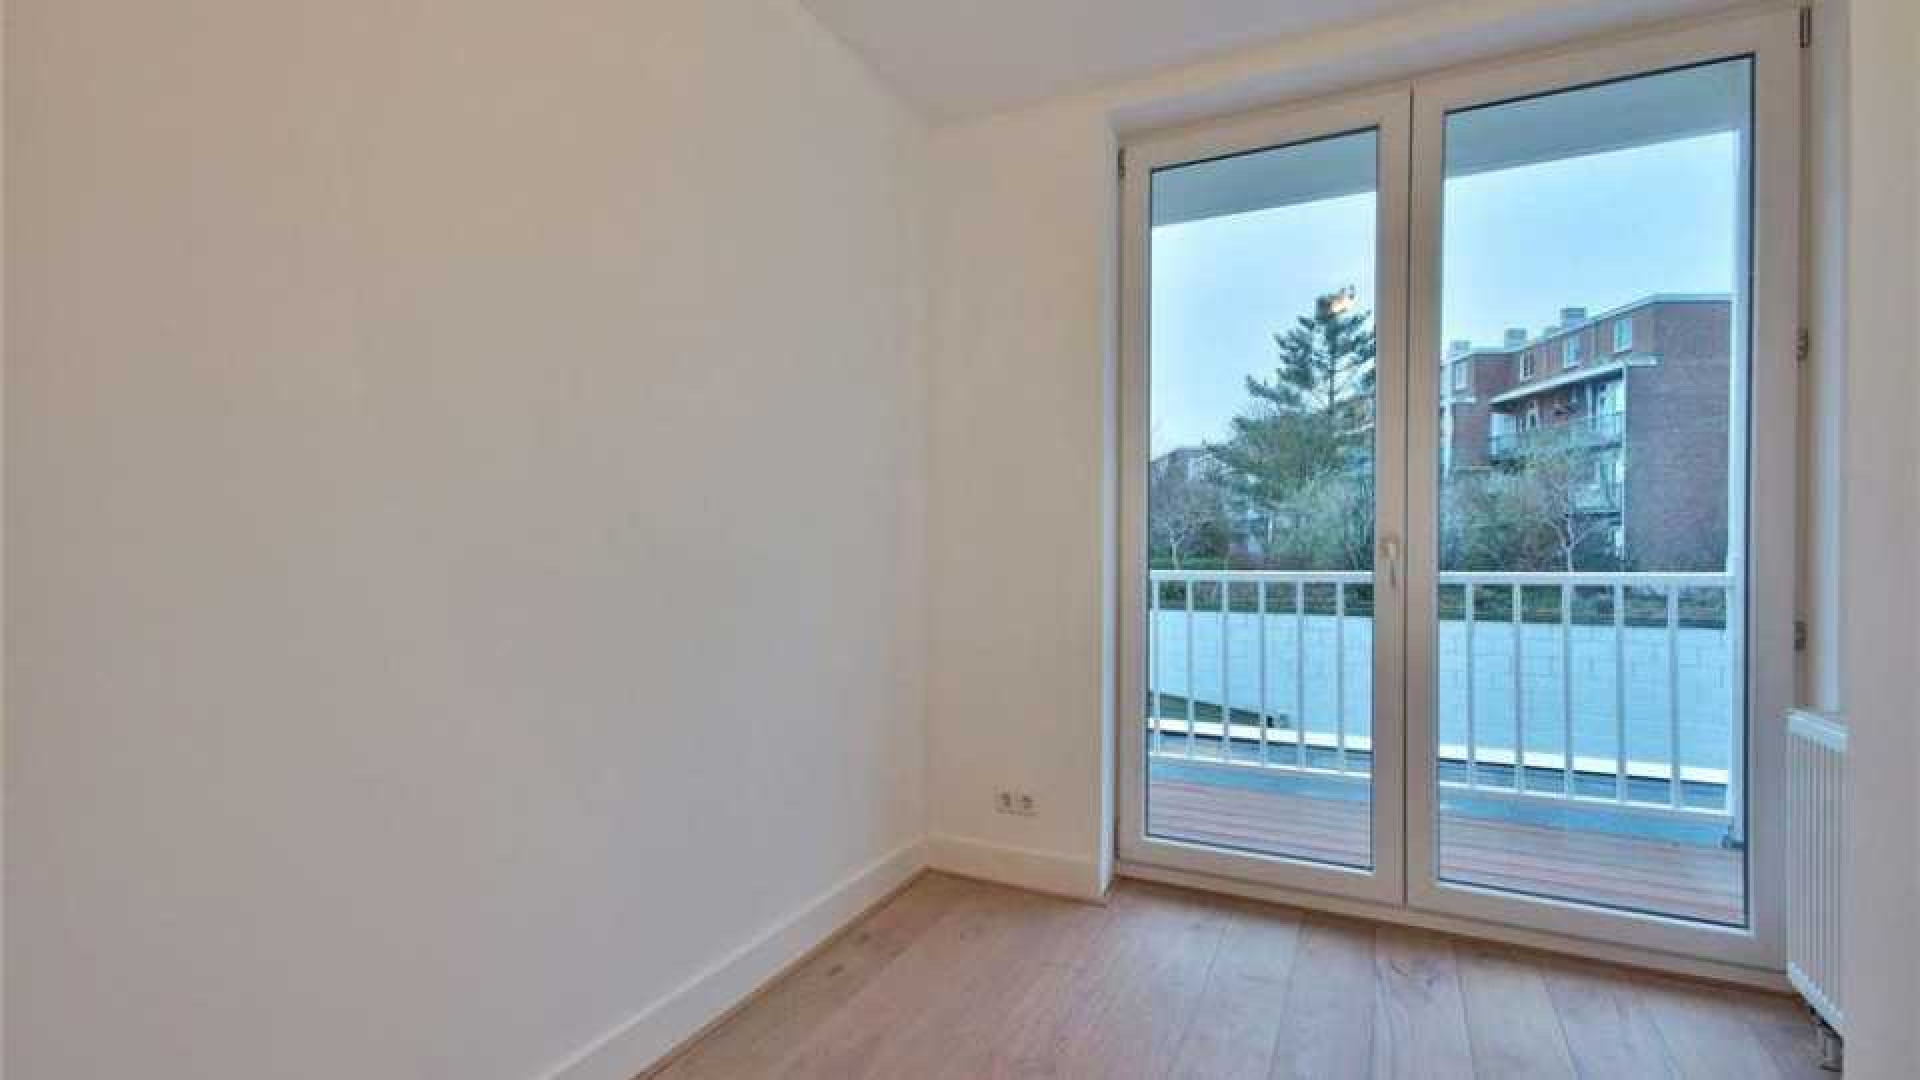 Bondscoach Danny Blind koopt appartement met uitzicht op de Amstel. Zie foto's 6